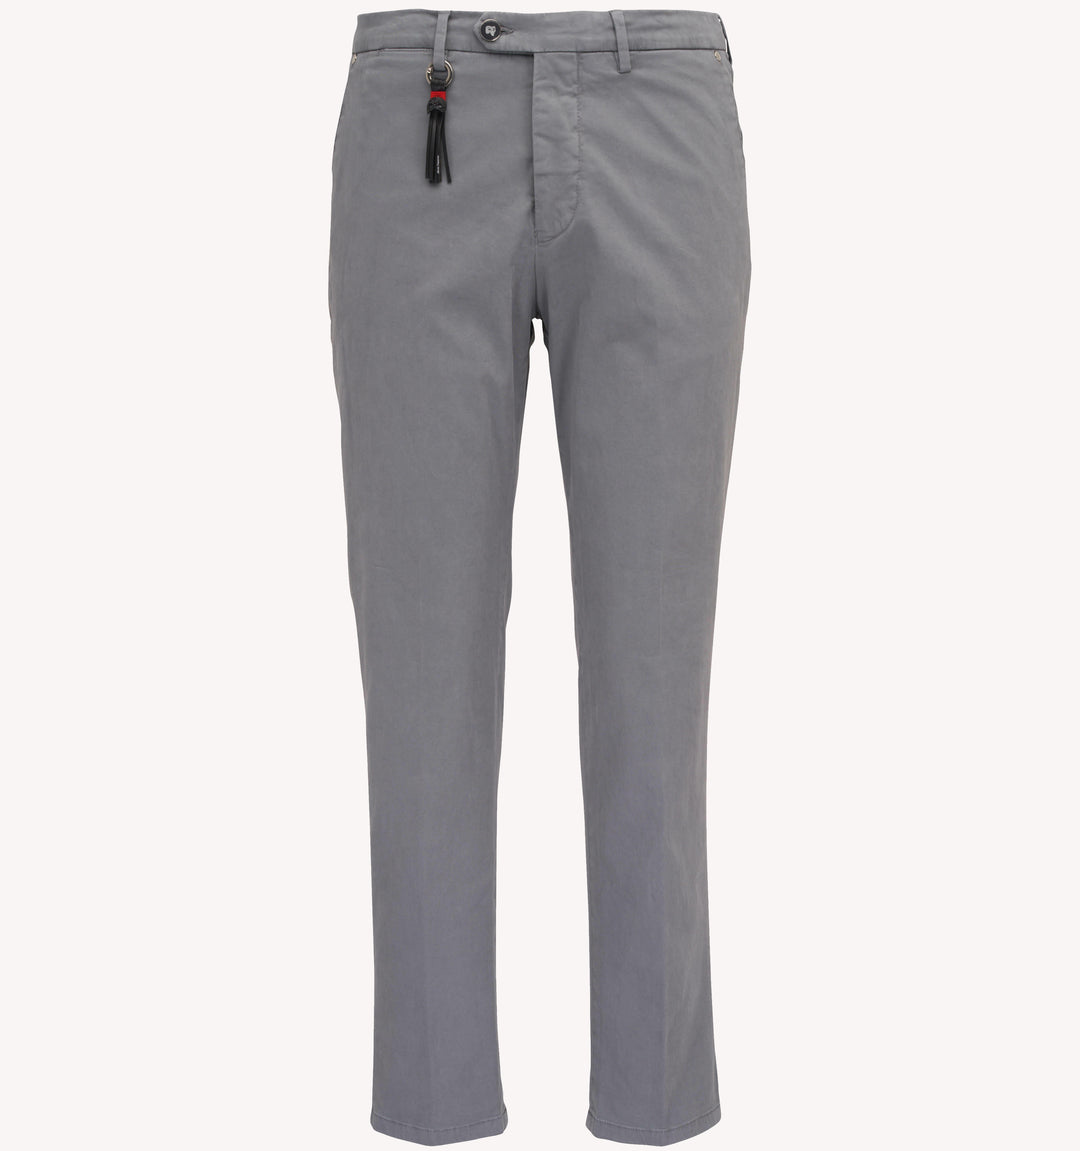 Pescarolo Sport Trouser in Grey